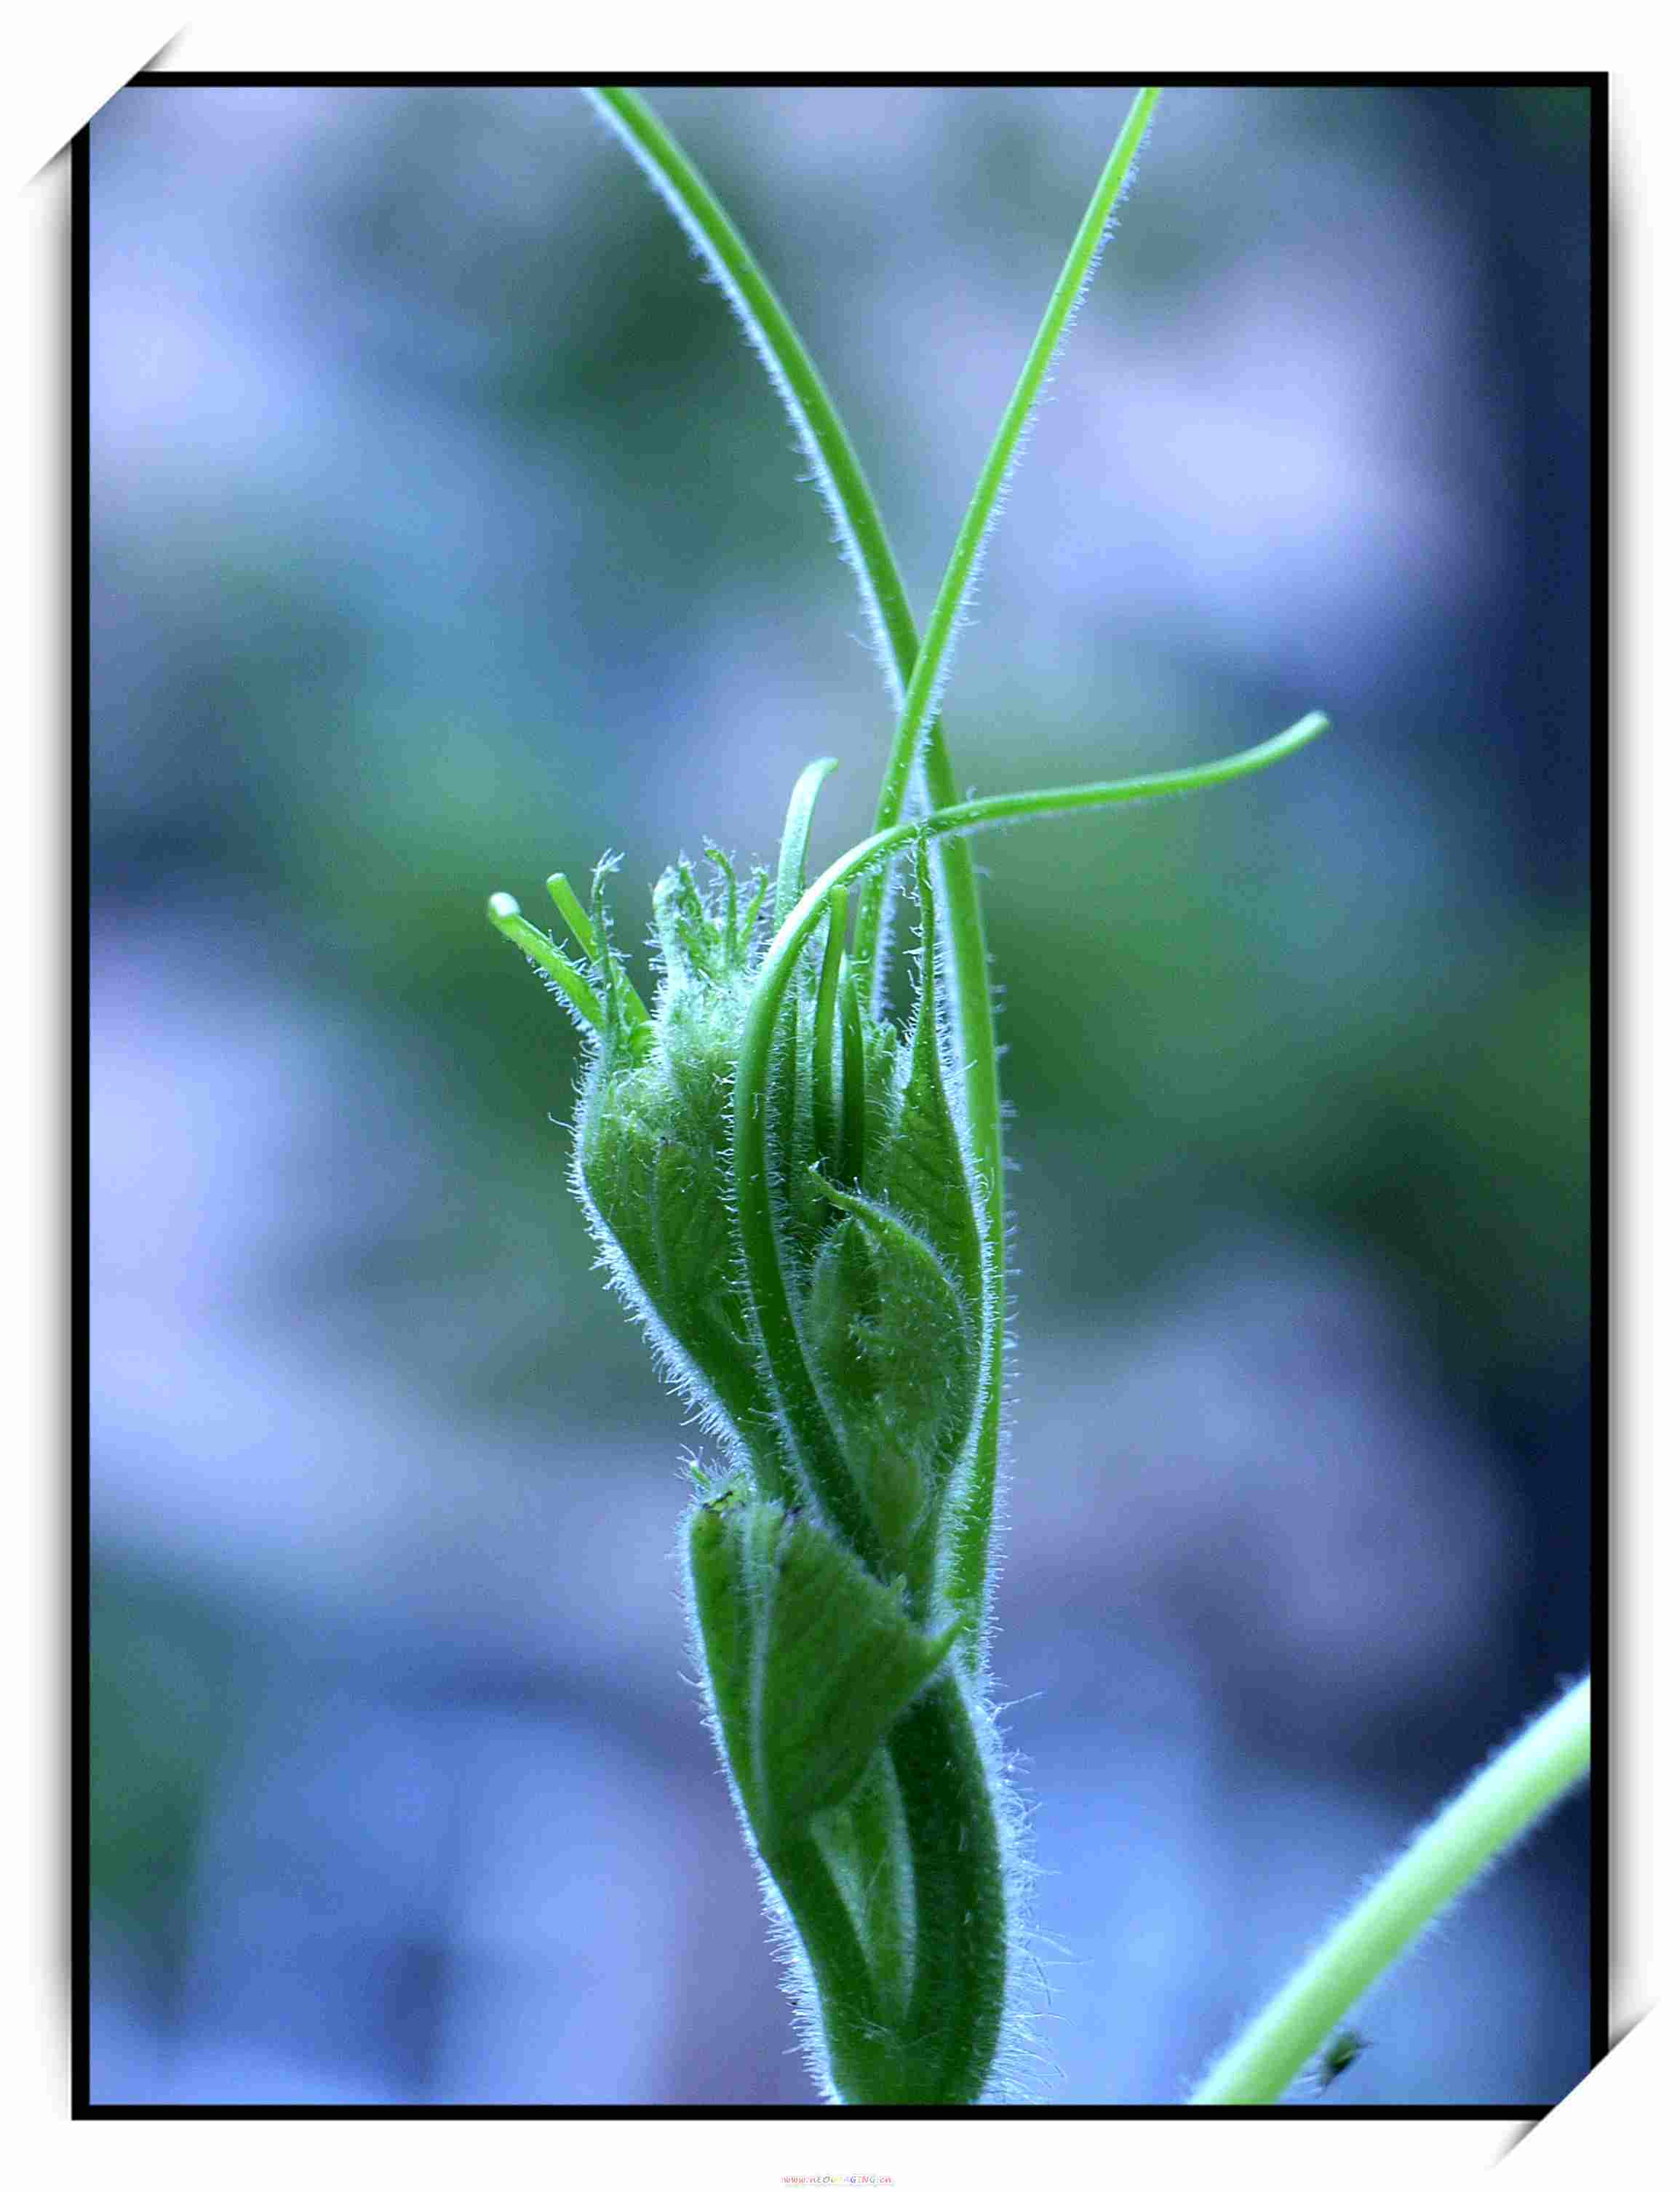 葫芦花图片_植物根茎的葫芦花图片大全 - 花卉网